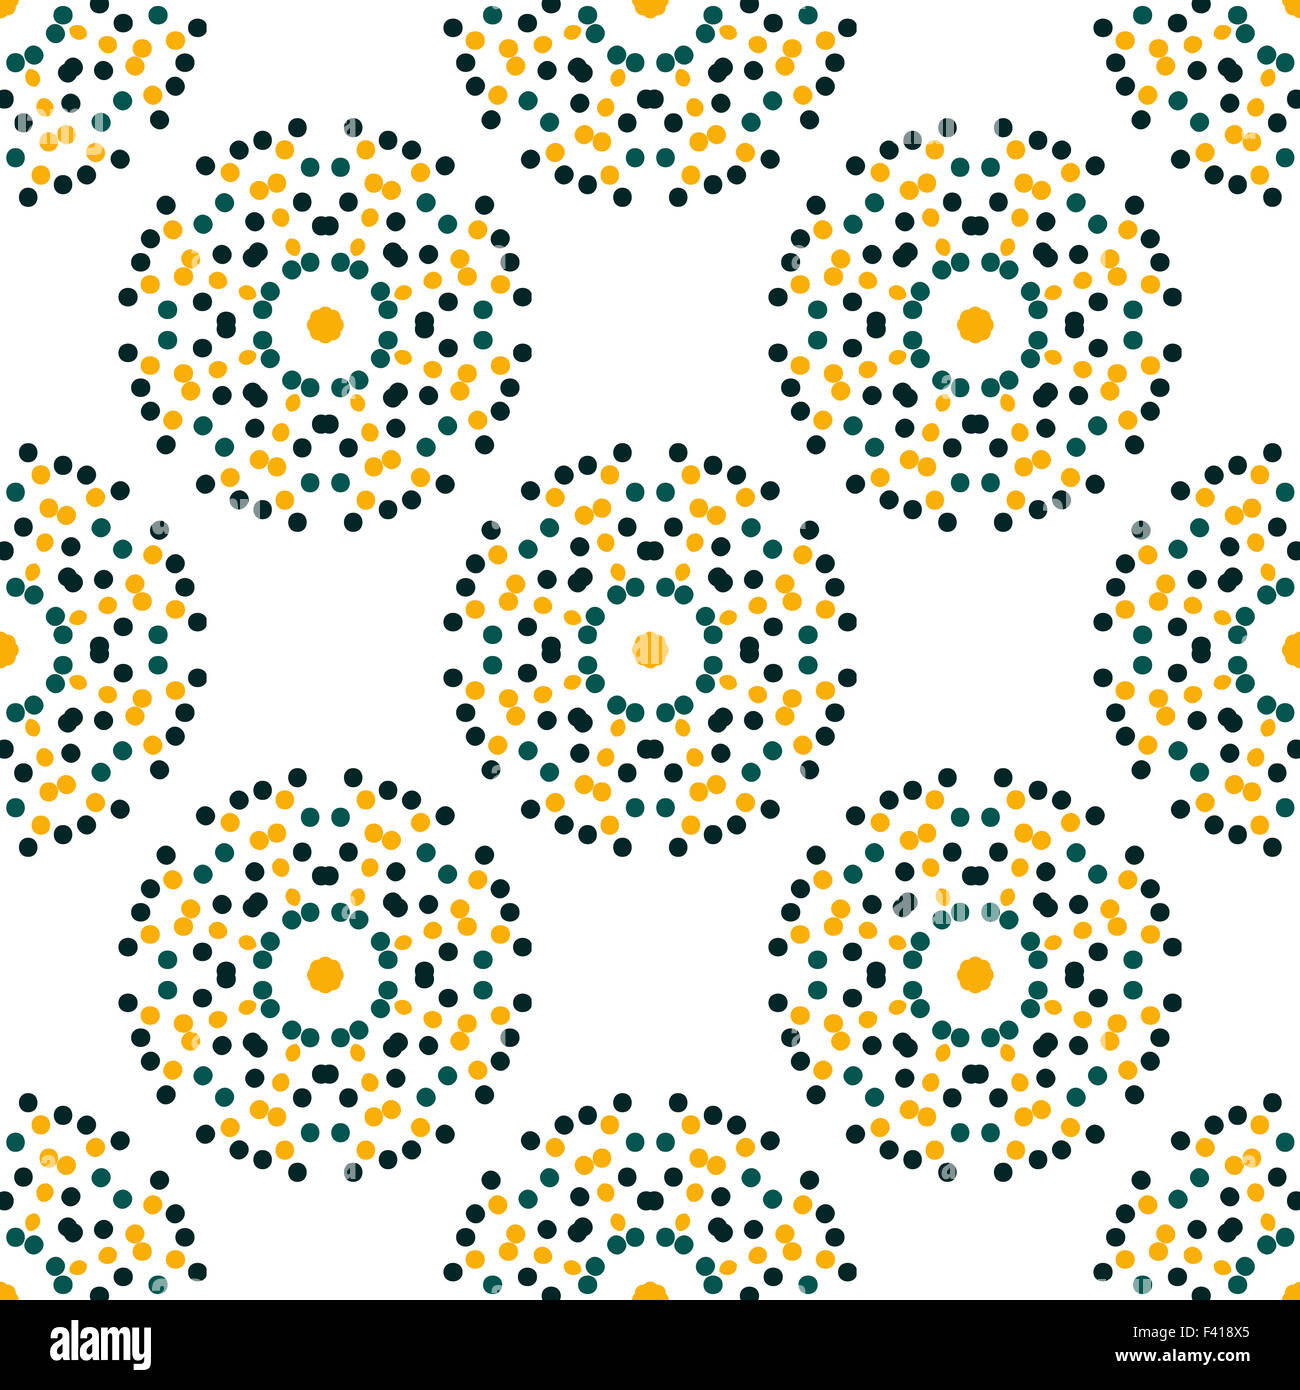 seamless pattern. Abstract stylish background Stock Photo